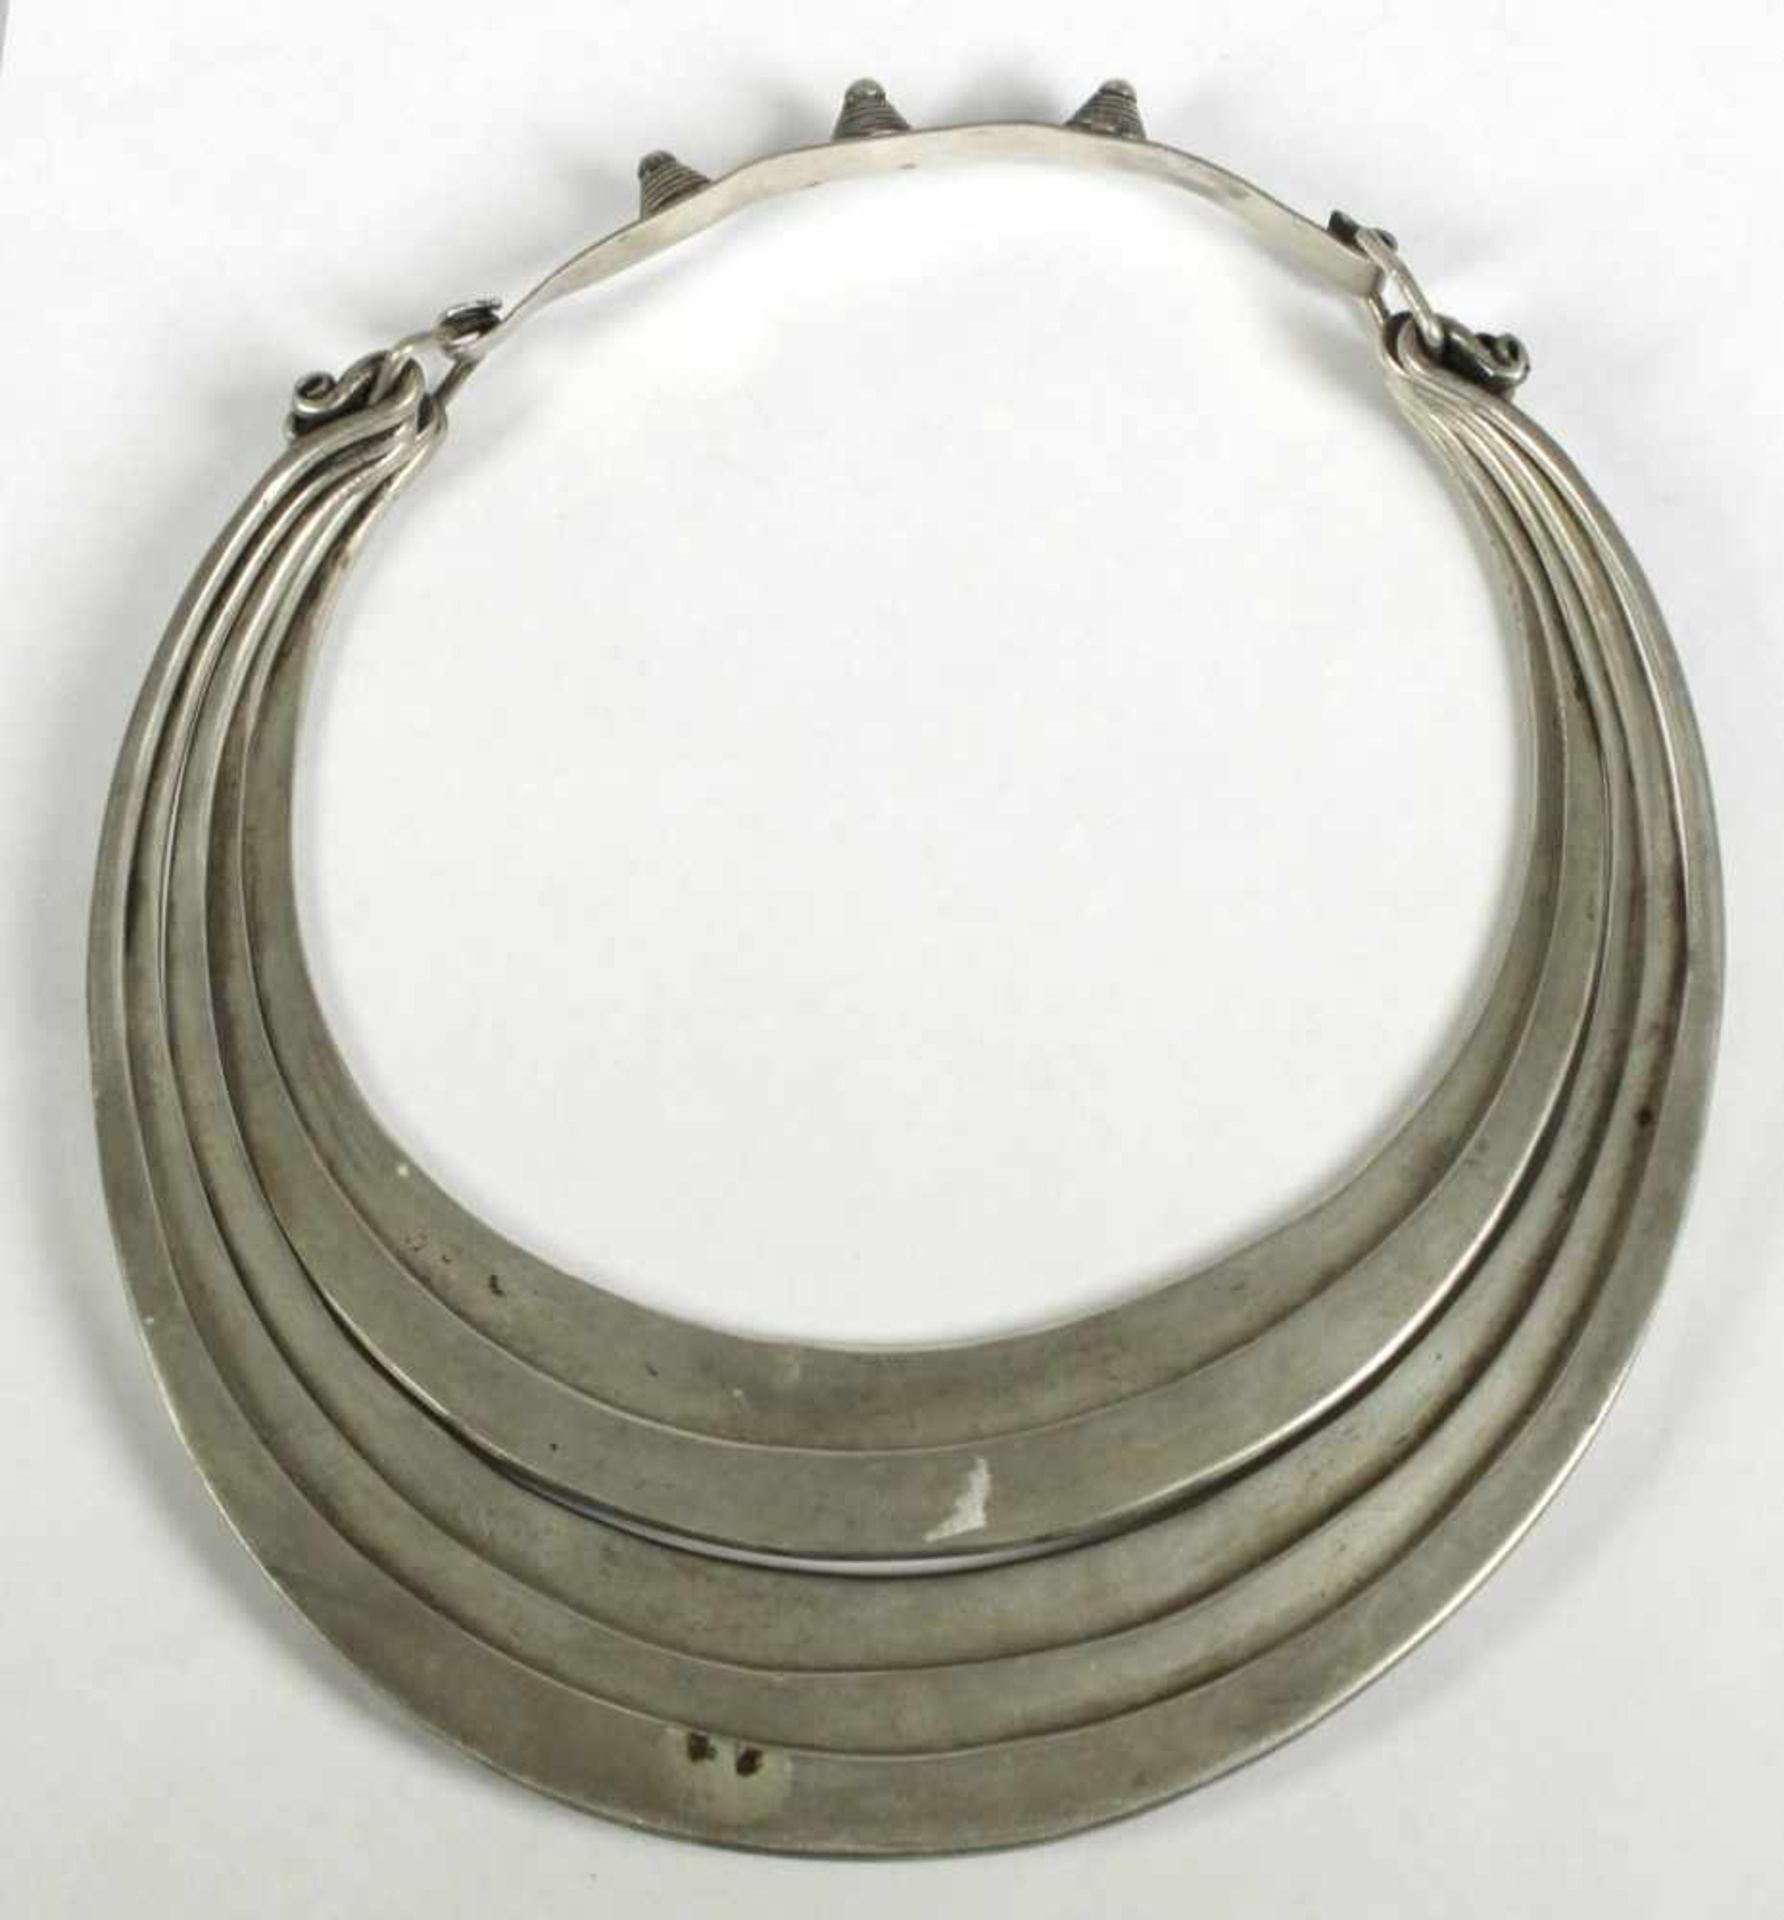 Hals-Schmuck, Hmong, Asien, um 1900, niedrig ligiertes Silber, gefertigt aus 5 Reifen, - Bild 2 aus 3